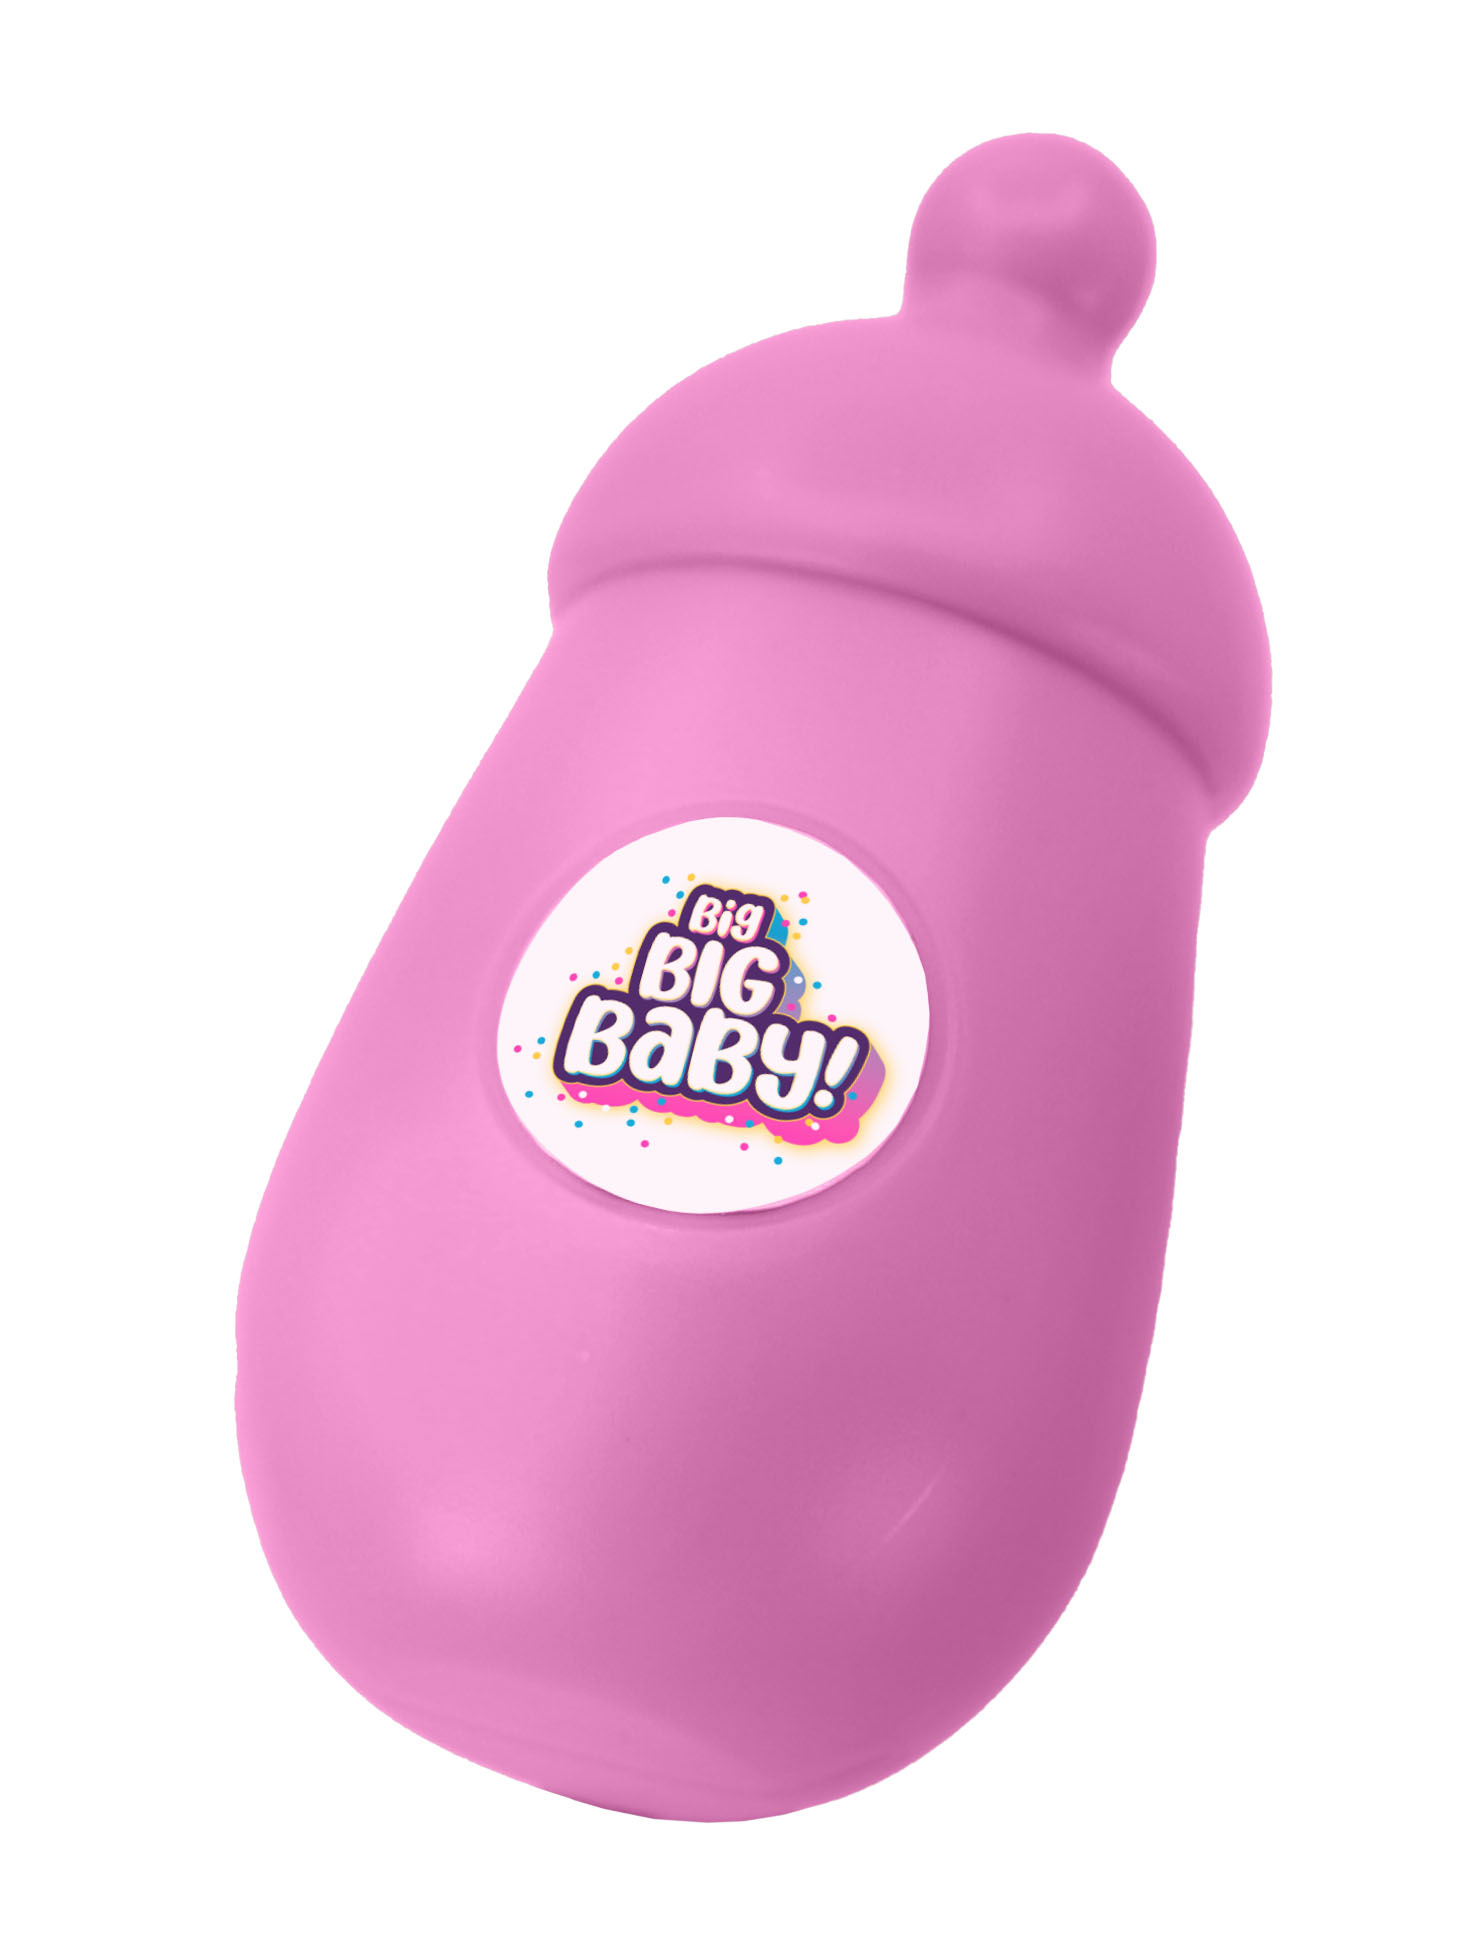 Игрушка сюрприз BIG BIG BABY Мягконабивная интерактивная кукла в шаре с аксессуарами - фото 20